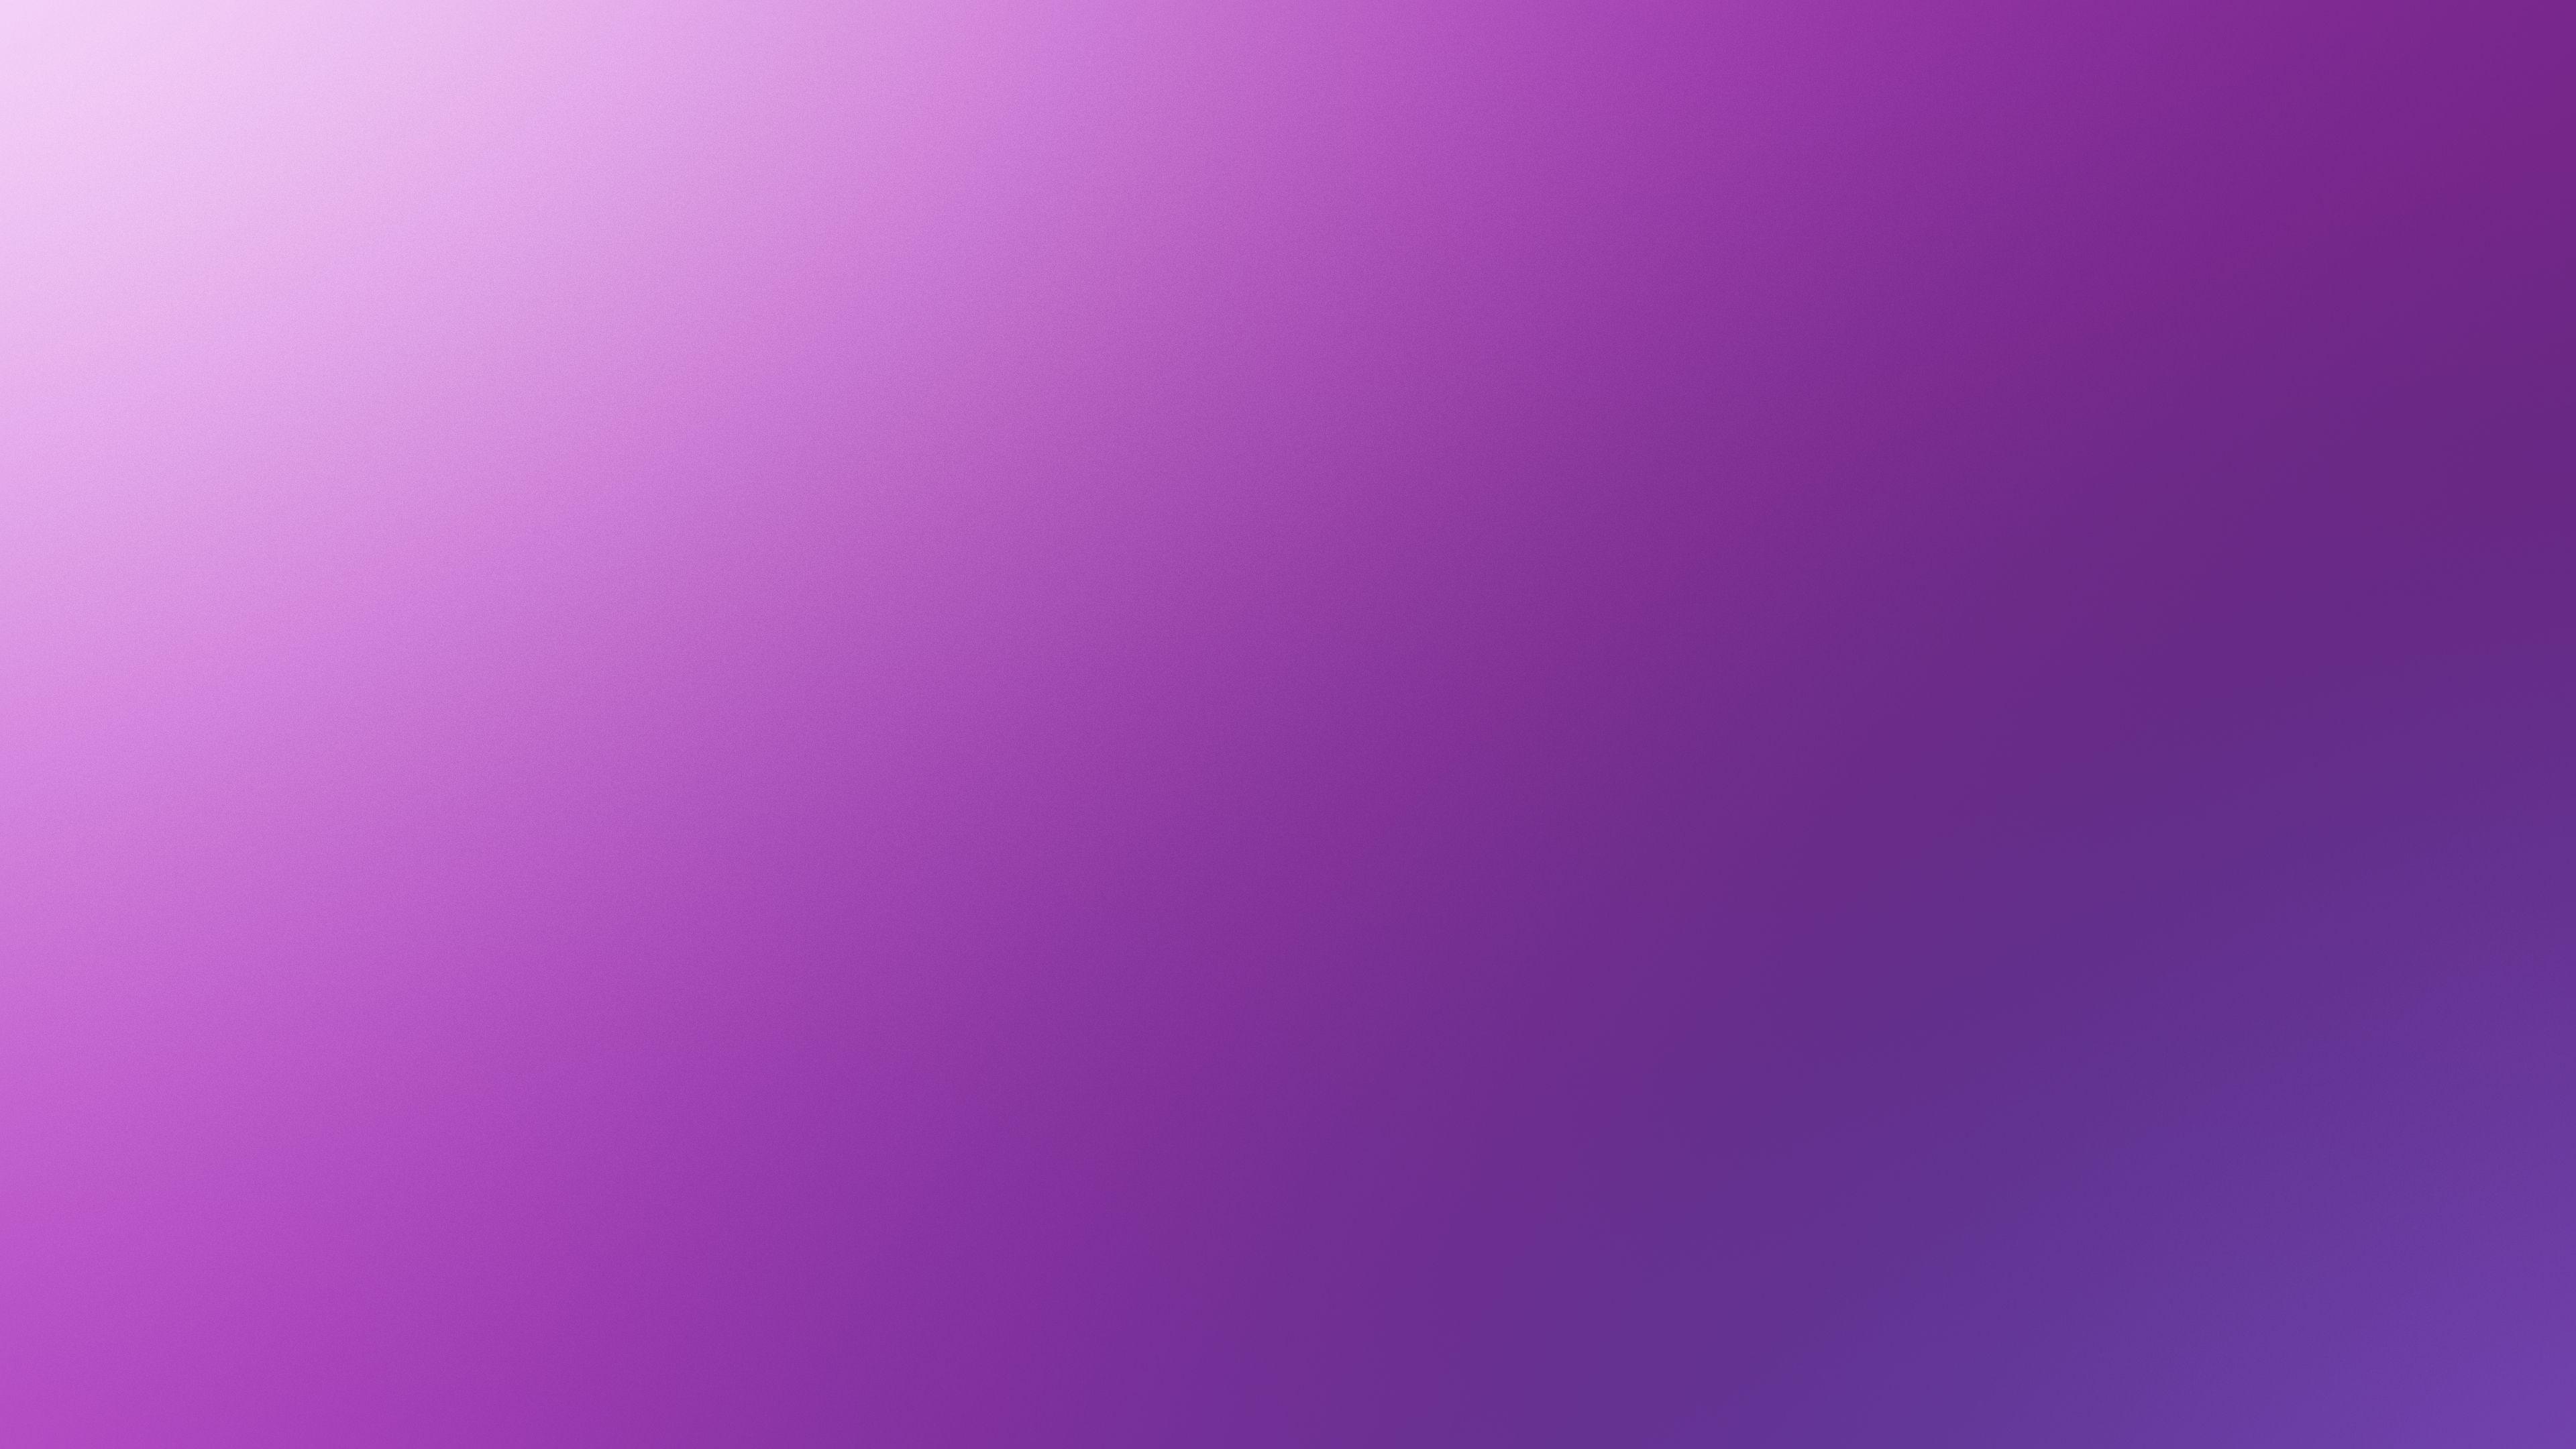 Light Violet Wallpapers - Top Những Hình Ảnh Đẹp